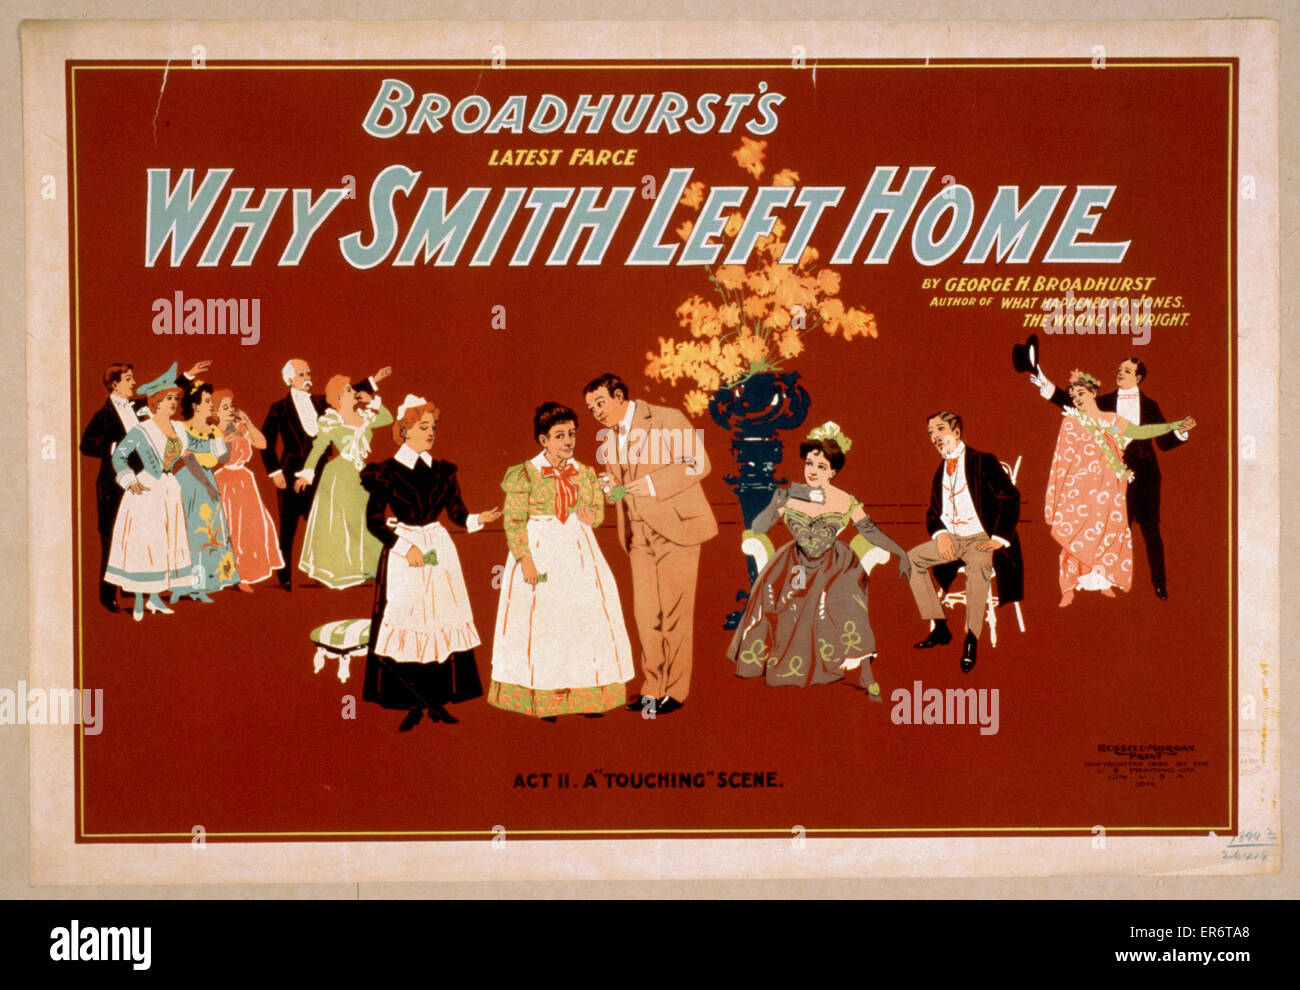 Broadhursts neueste Farce, Warum Smith sein Zuhause von George H. verließ Stockfoto